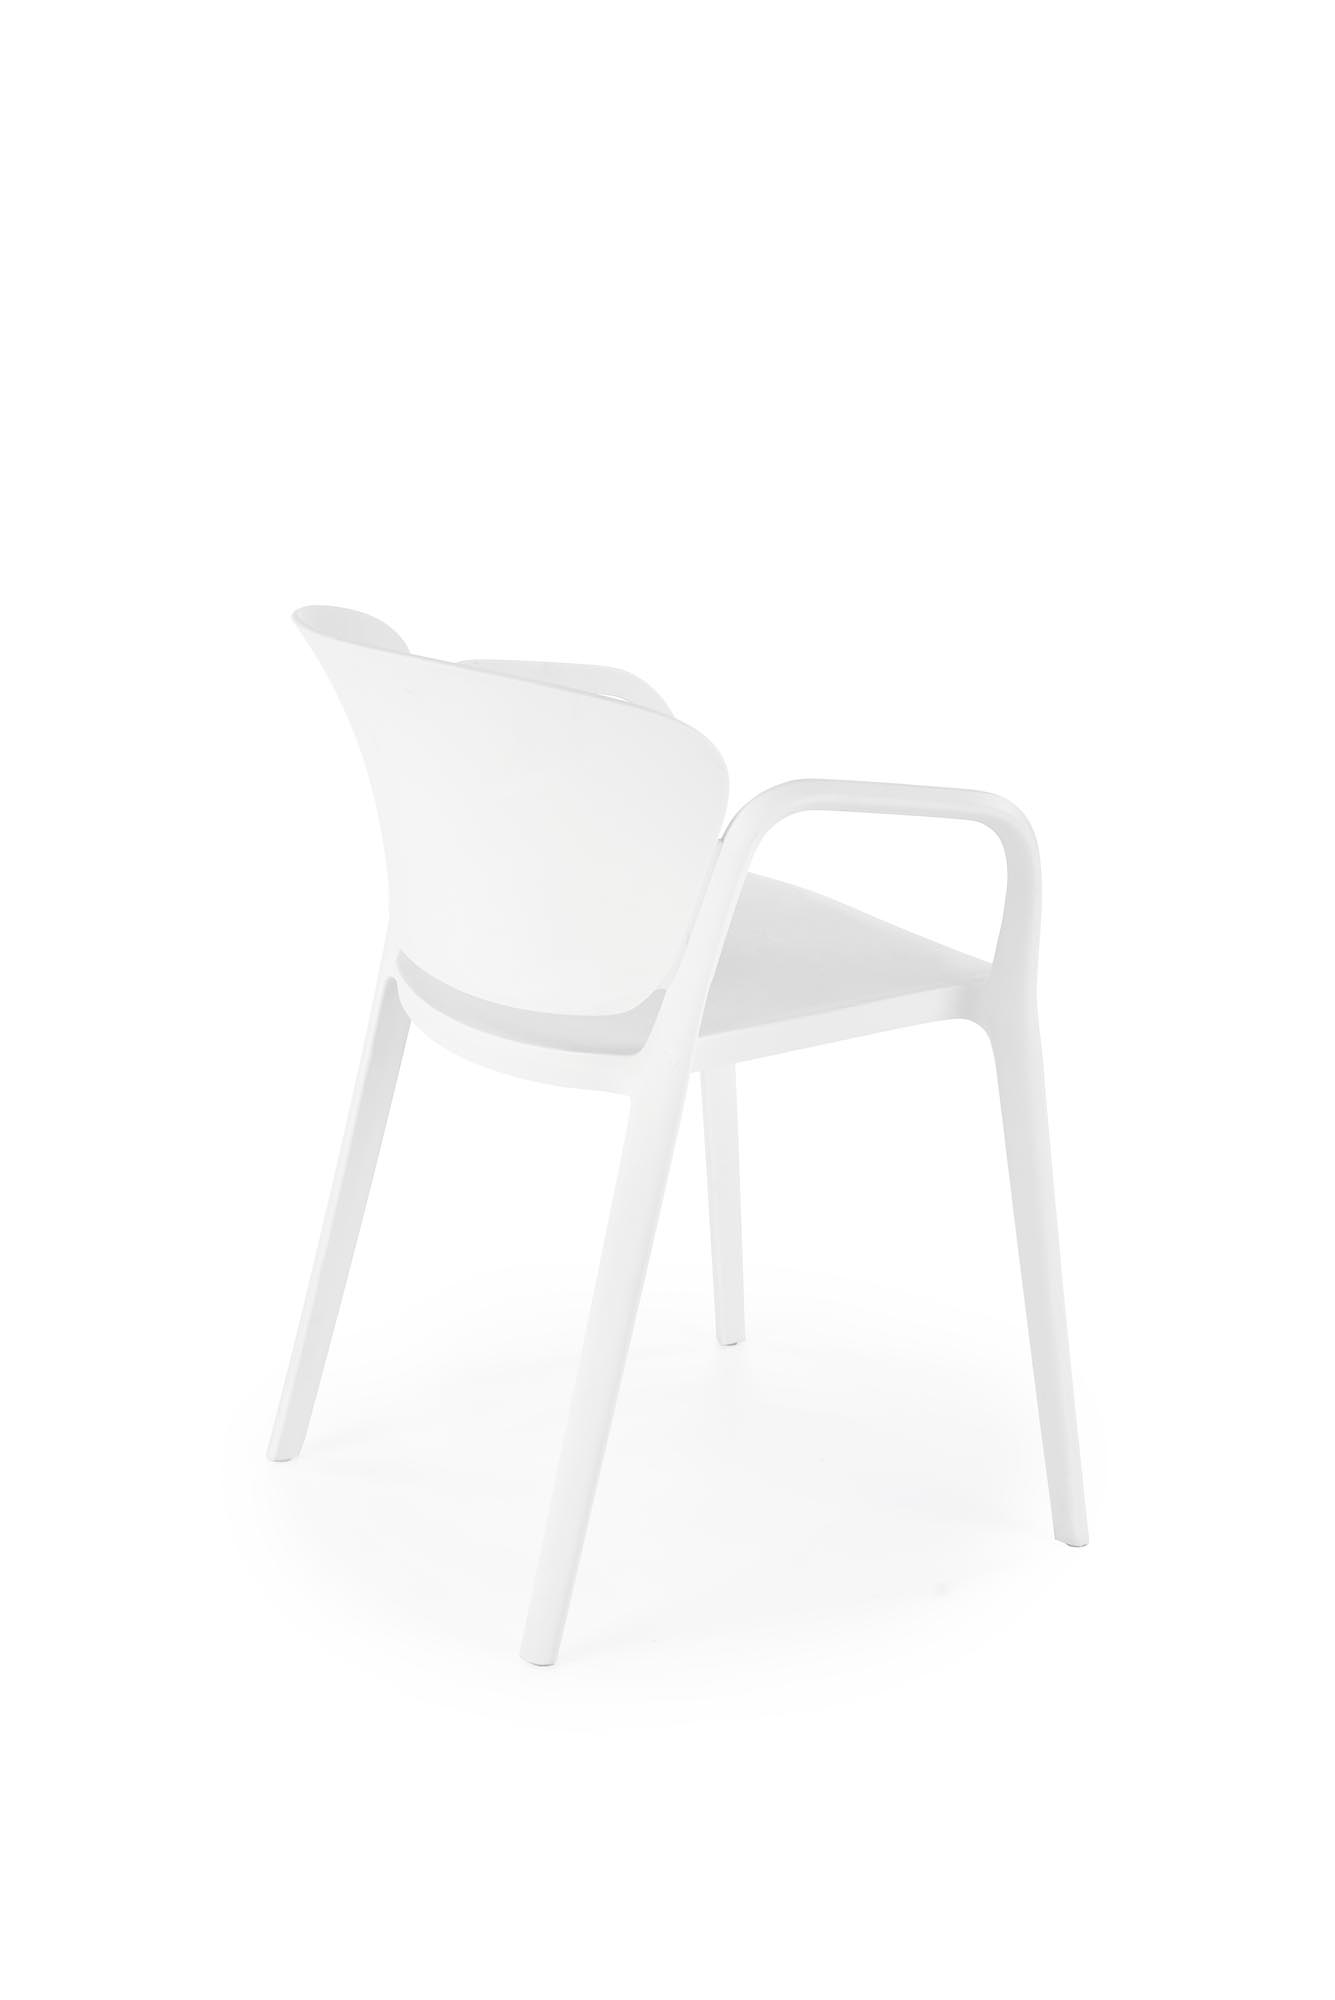 K491 Stolička plastik Biely (1p=4szt) Stolička z tworzywa sztucznego k491 - Biely